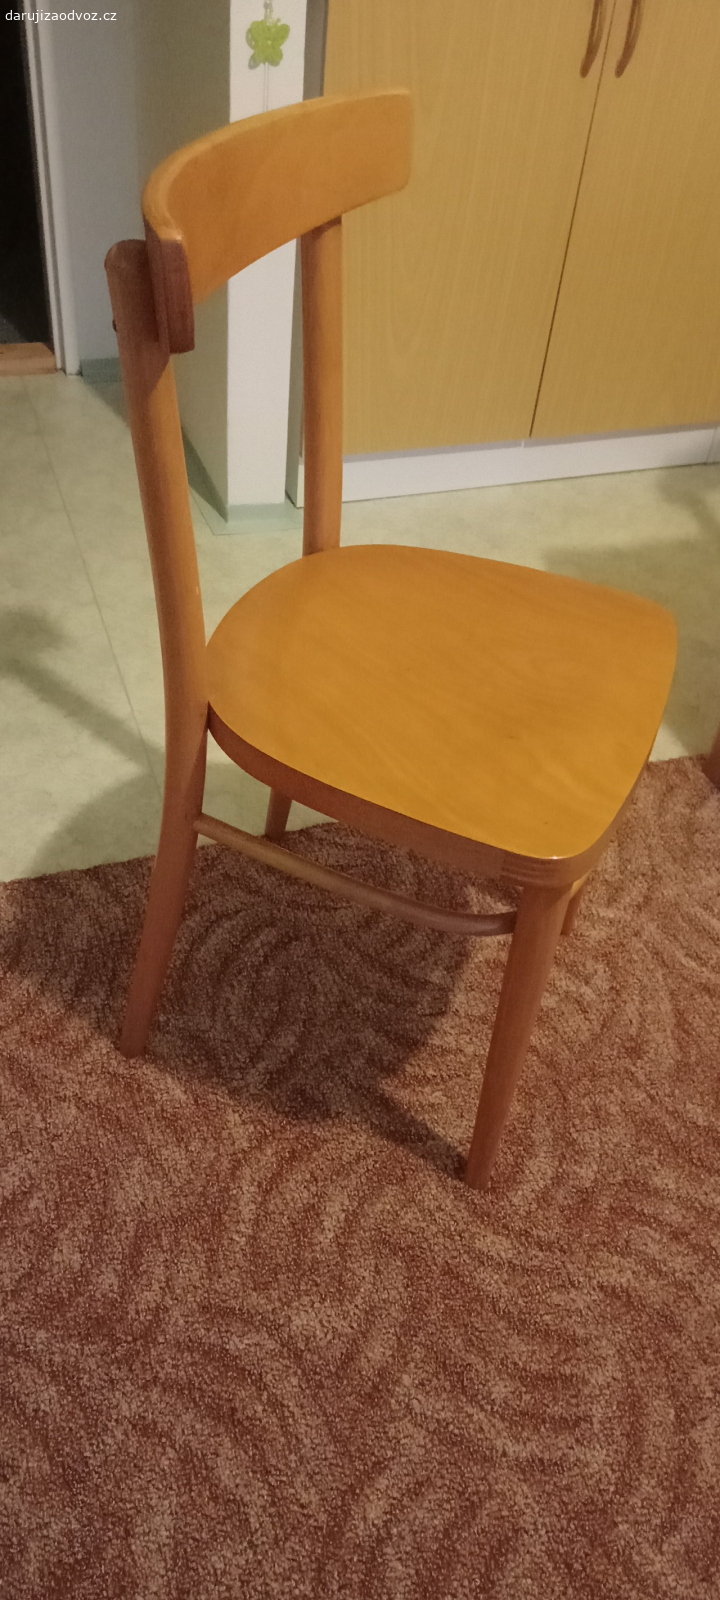 Jídelní židle. Klasická kuchyňská židle. Dvě židle ihned k odběru, třetí za nějakou dobu. Nerozvrzané, jako nové... Osobní odběr v Brně Líšni